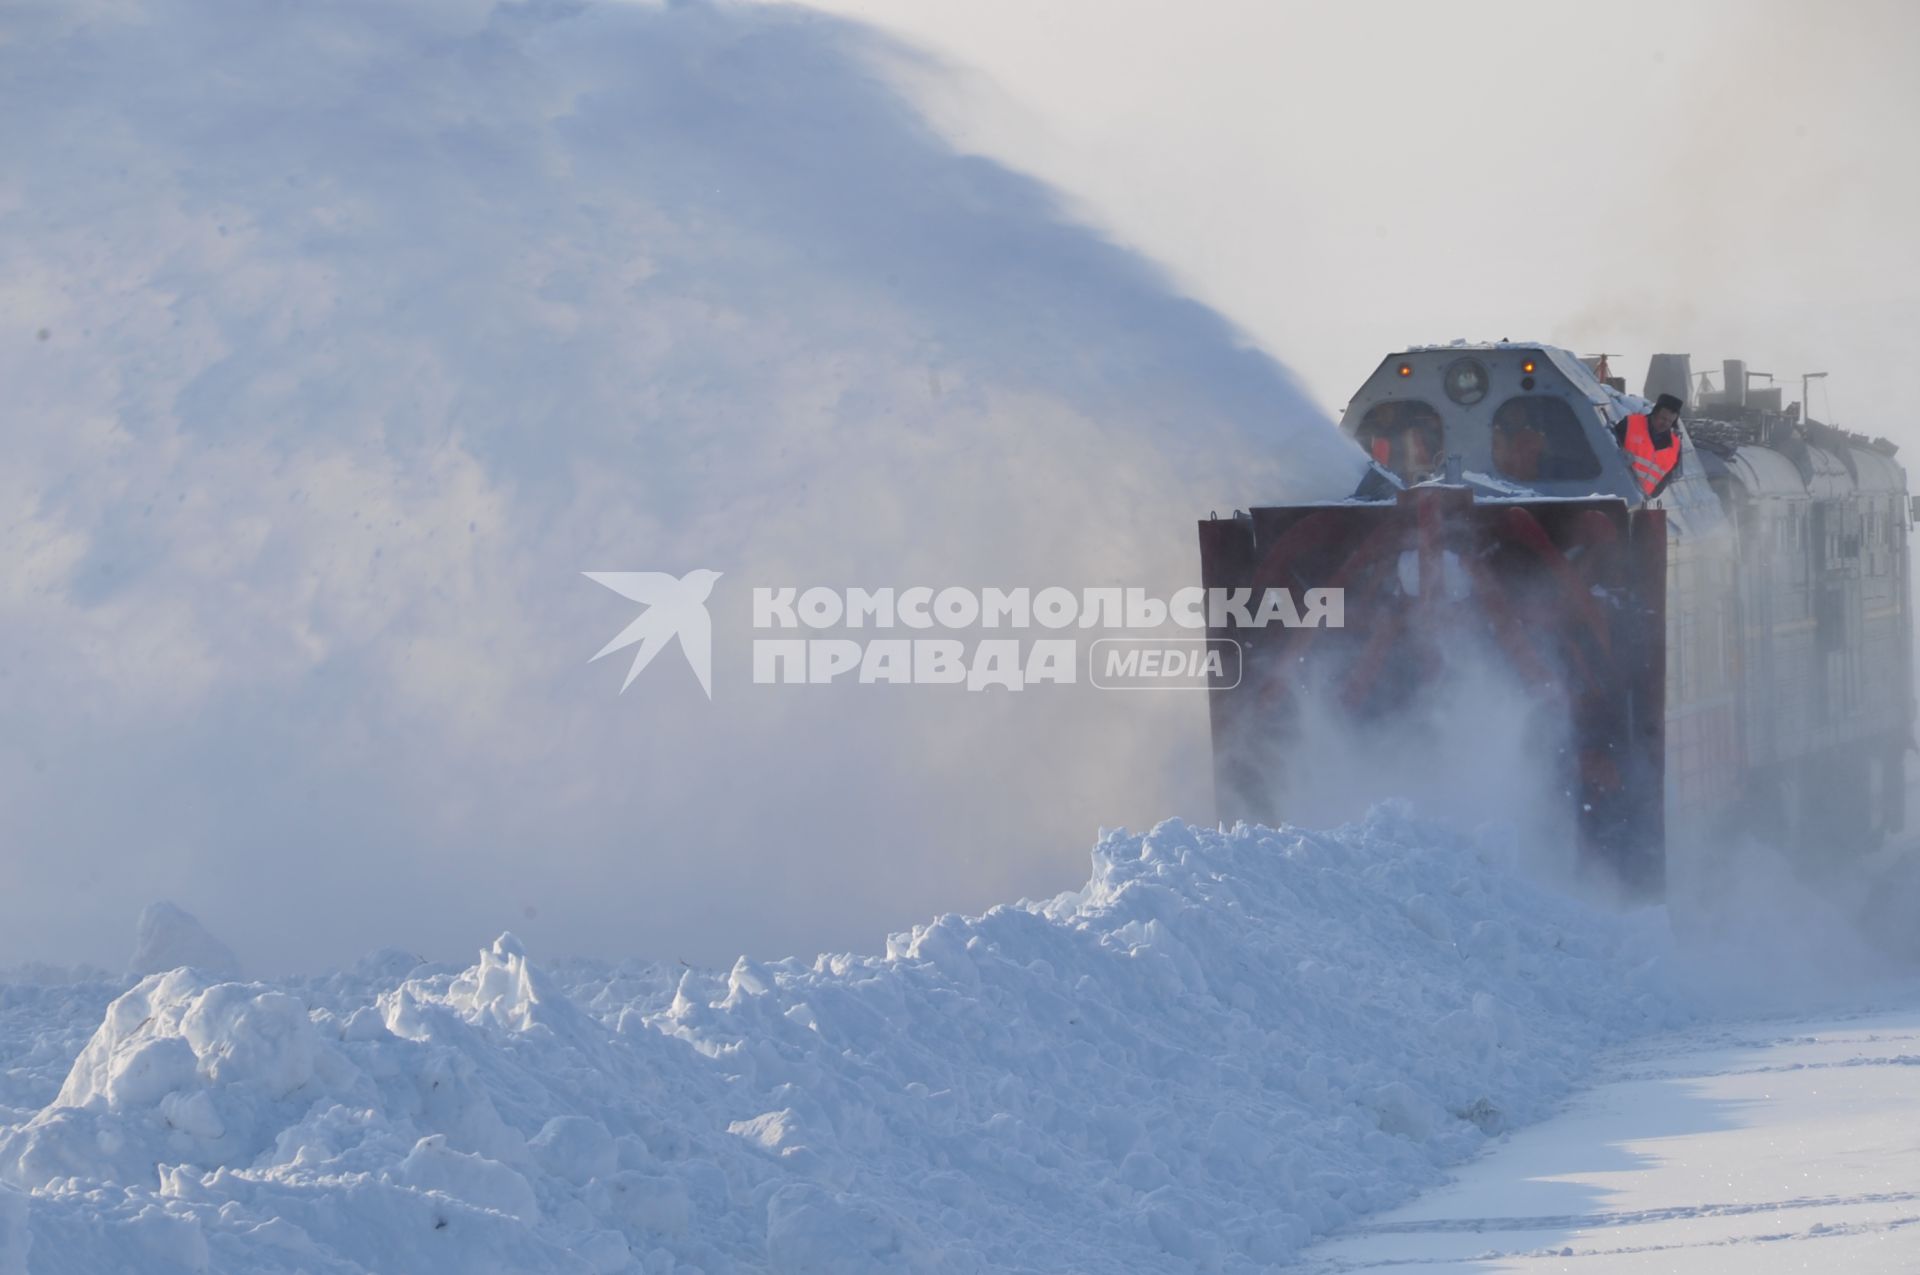 Ямало-Ненецкий автономный округ. Тундра. На снимке: специальный поезд для уборки снега на железной дороге.